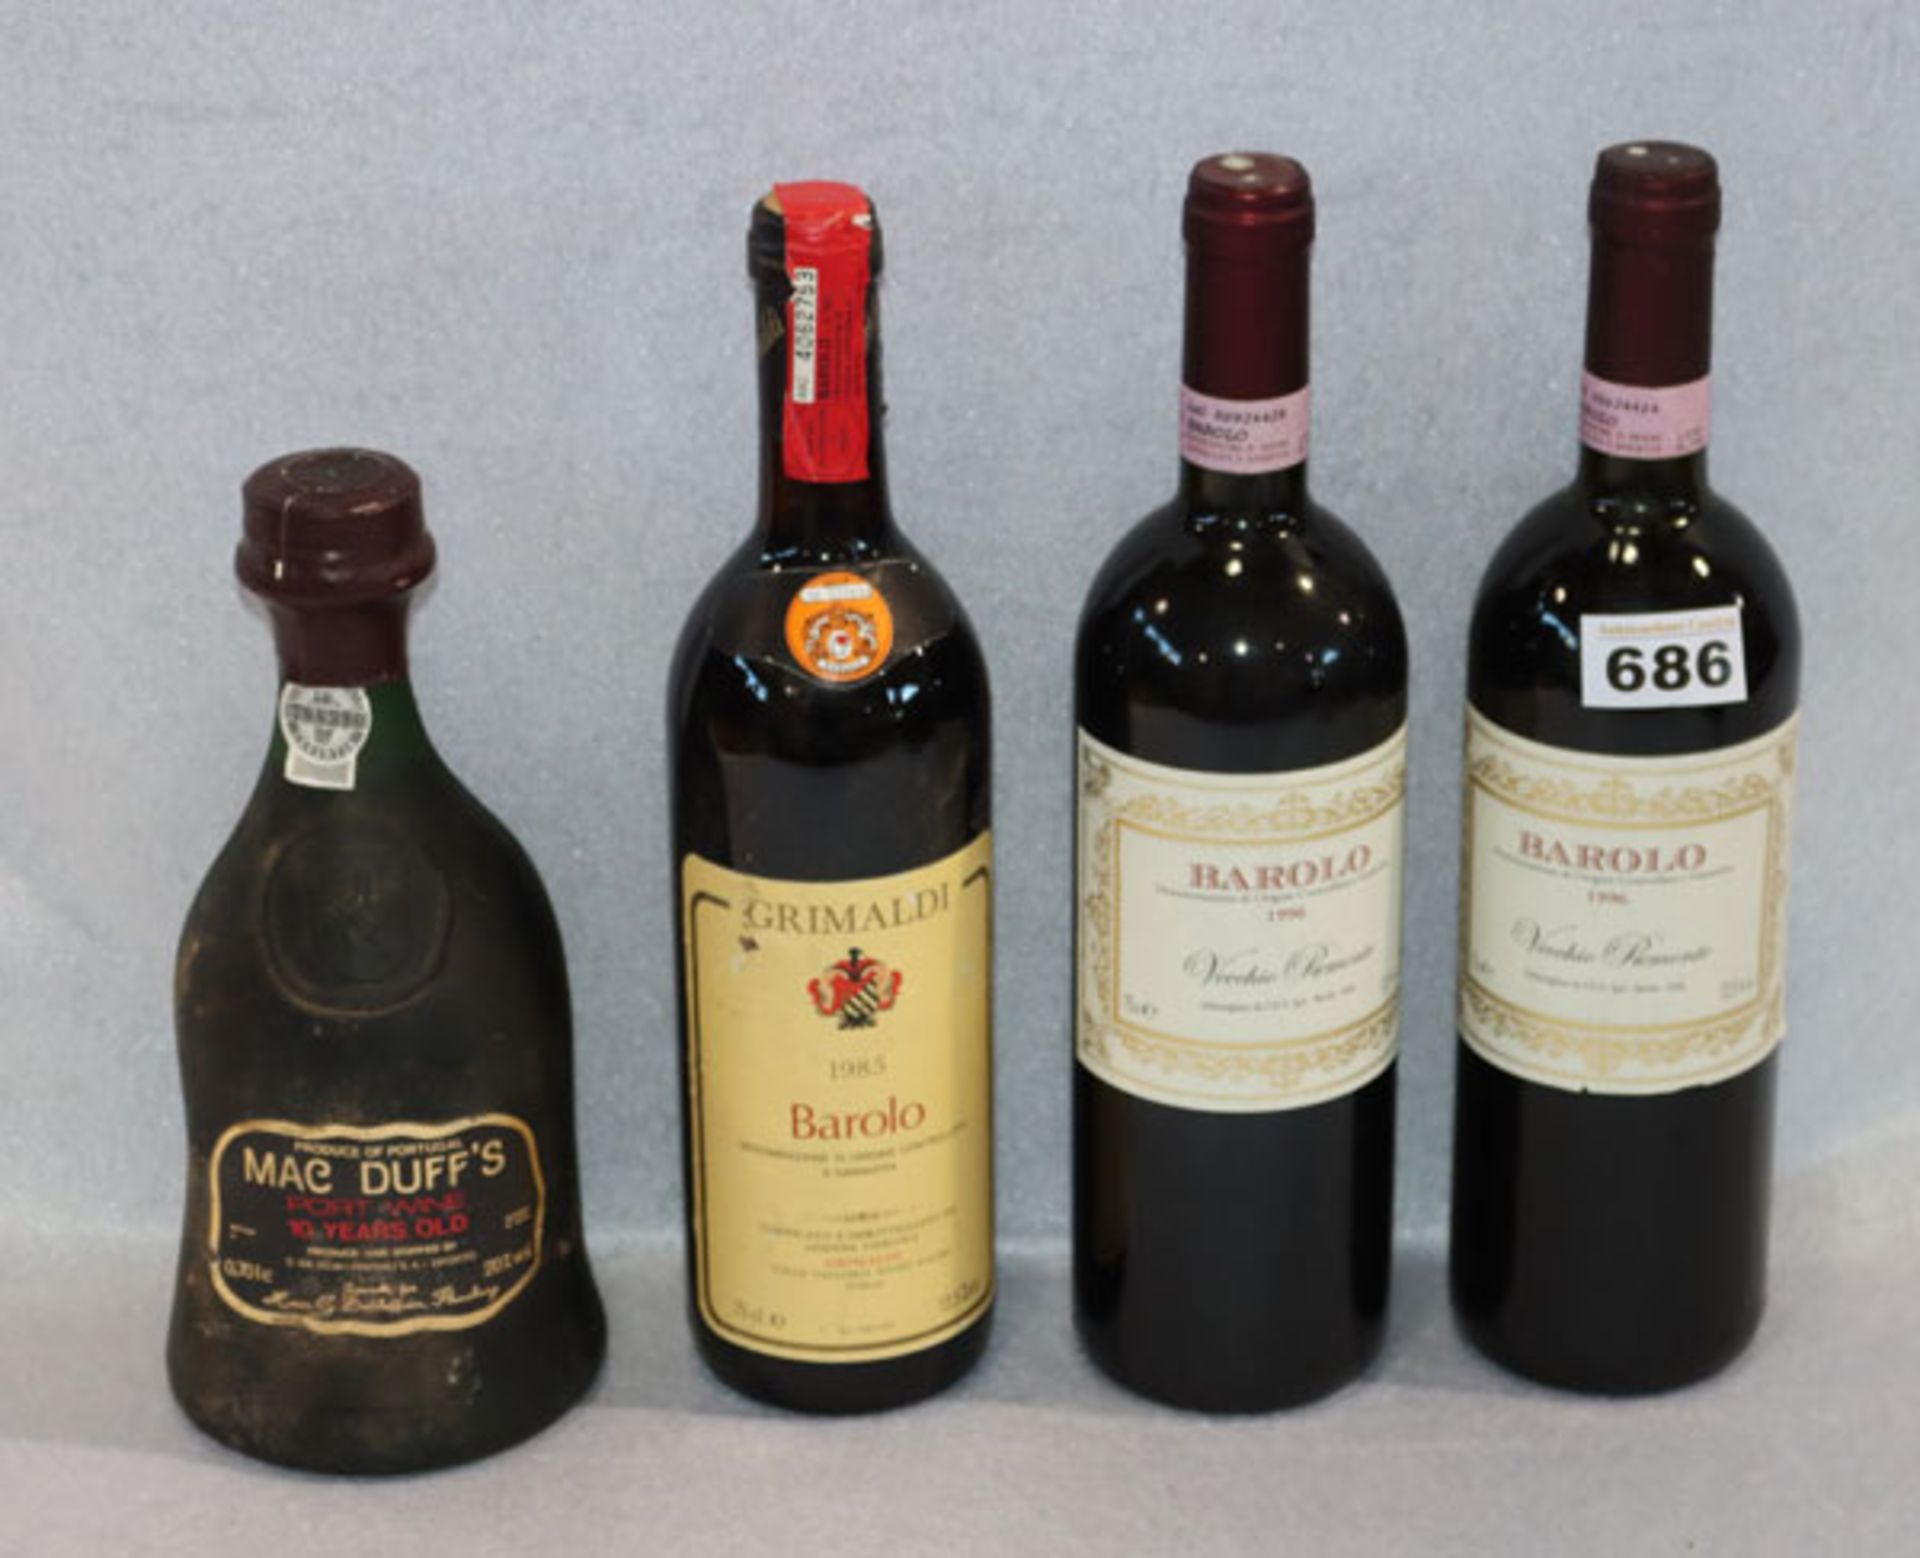 Wein-Konvolut: 2 Flaschen Barolo 1996, Vecchio Piemonte, 1 Flasche Barolo 1985, Grimaldi, und 1